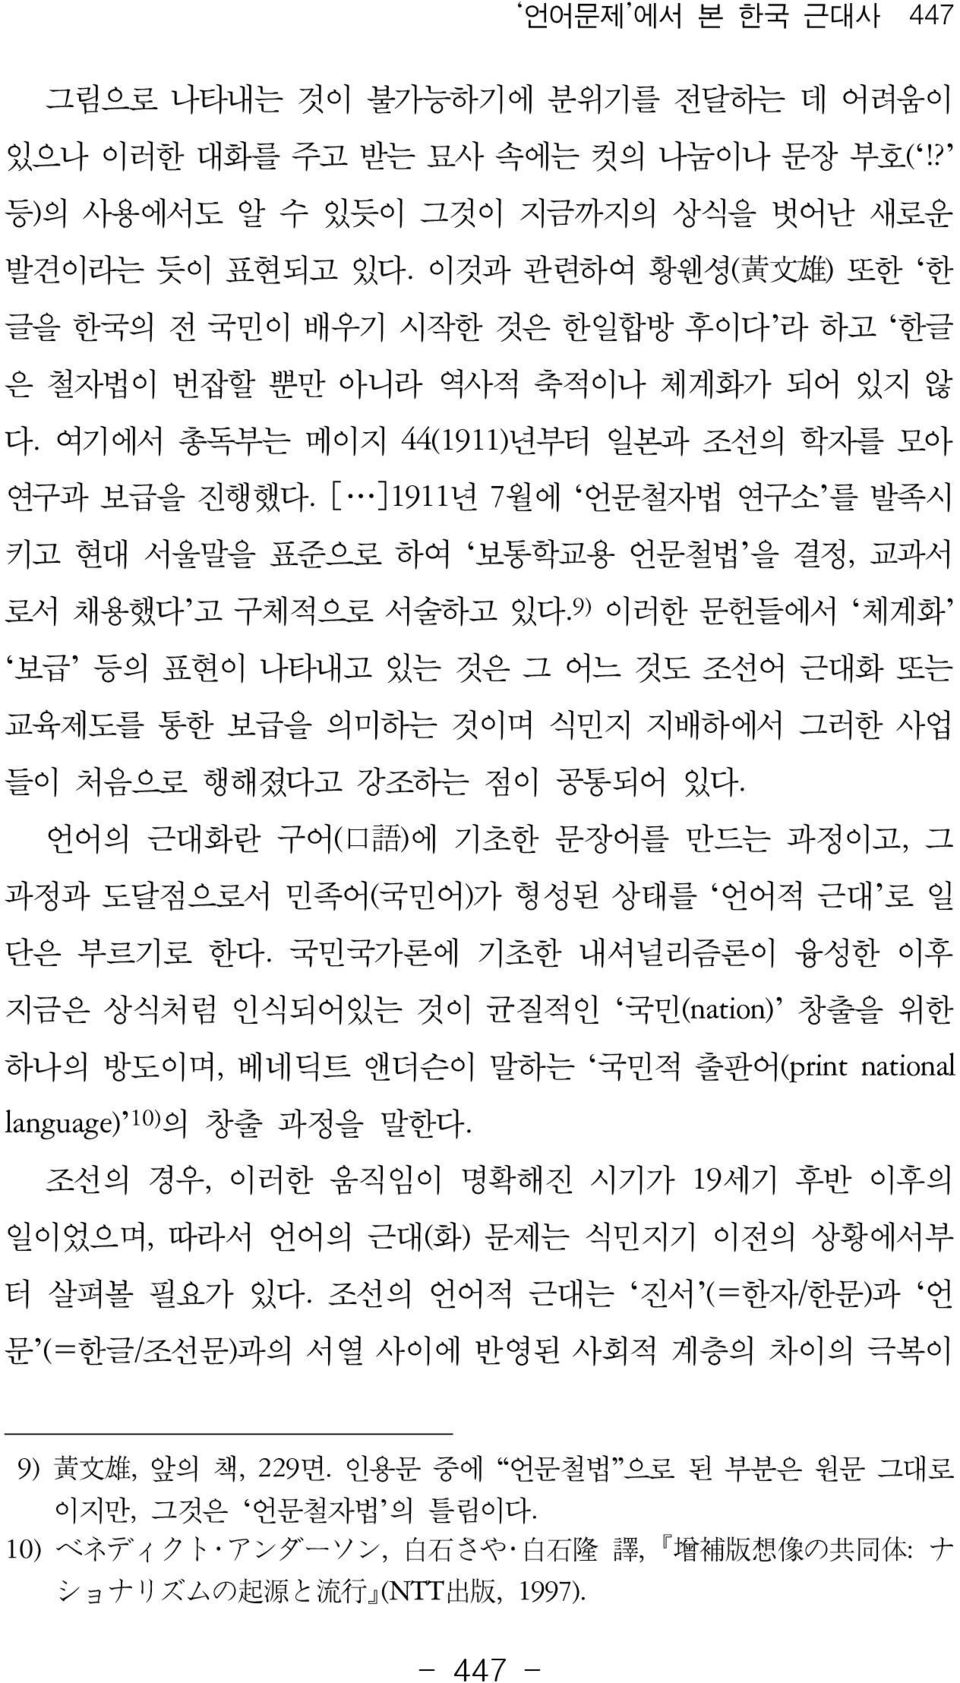 [ ]1911년 7월에 언문철자법 연구소 를 발족시 키고 현대 서울말을 표준으로 하여 보통학교용 언문철법 을 결정, 교과서 로서 채용했다 고 구체적으로 서술하고 있다.